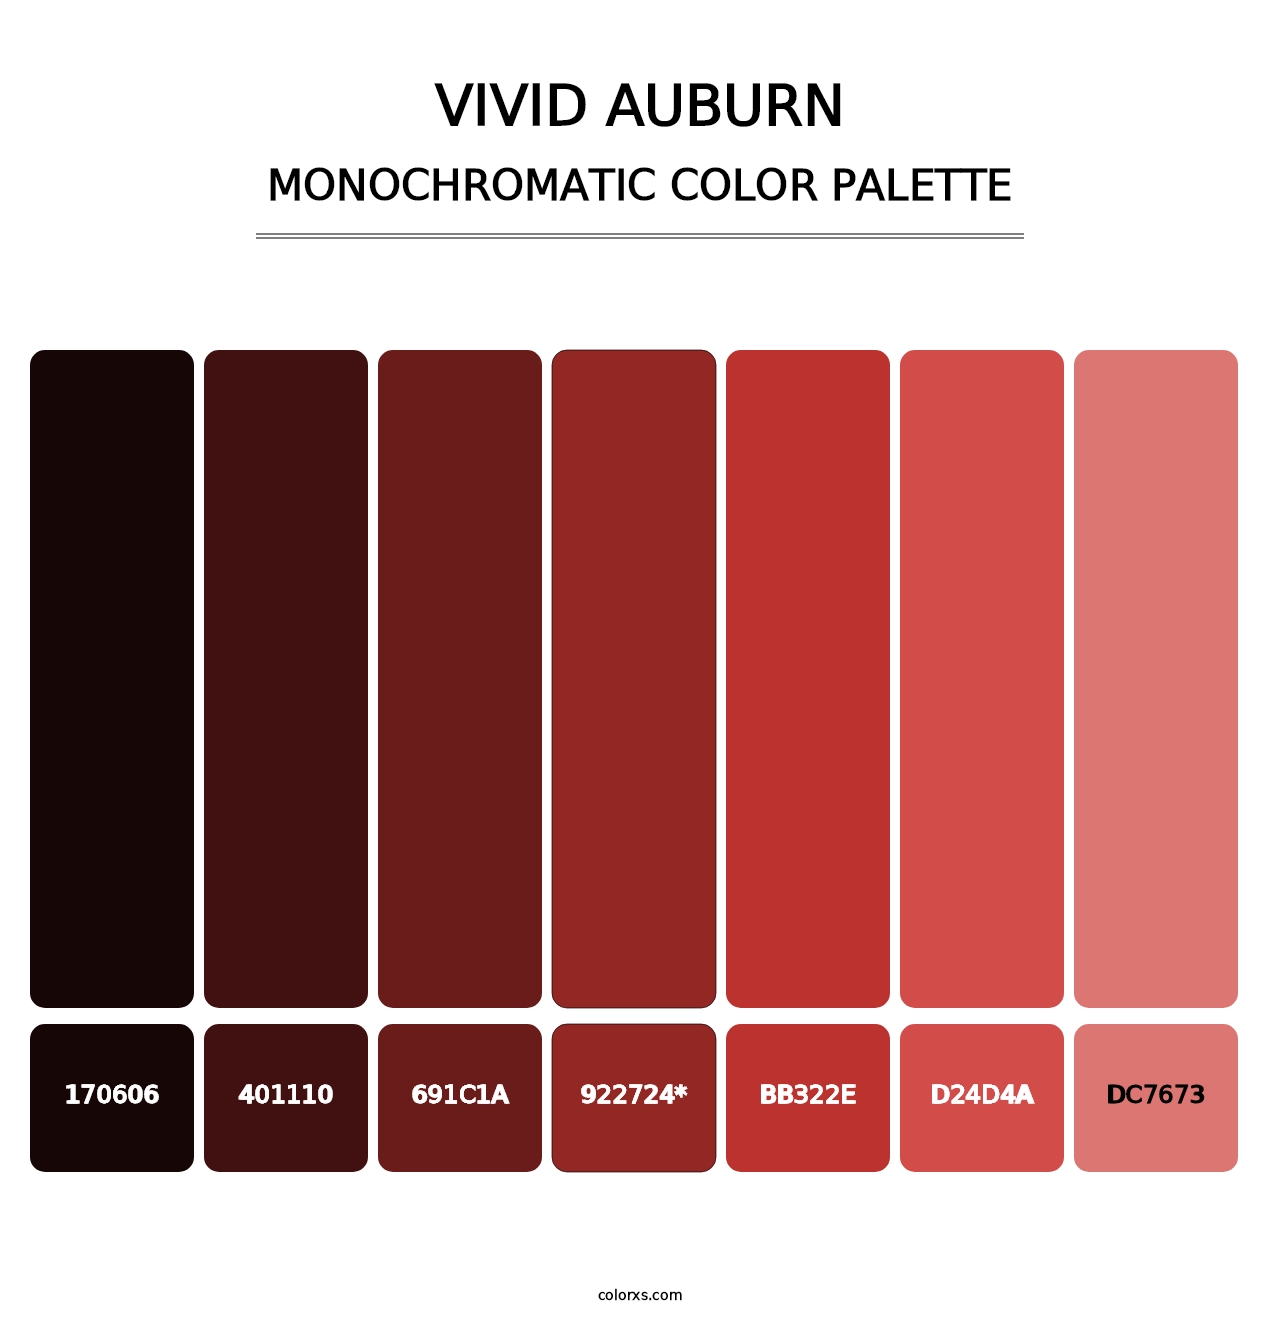 Vivid Auburn - Monochromatic Color Palette